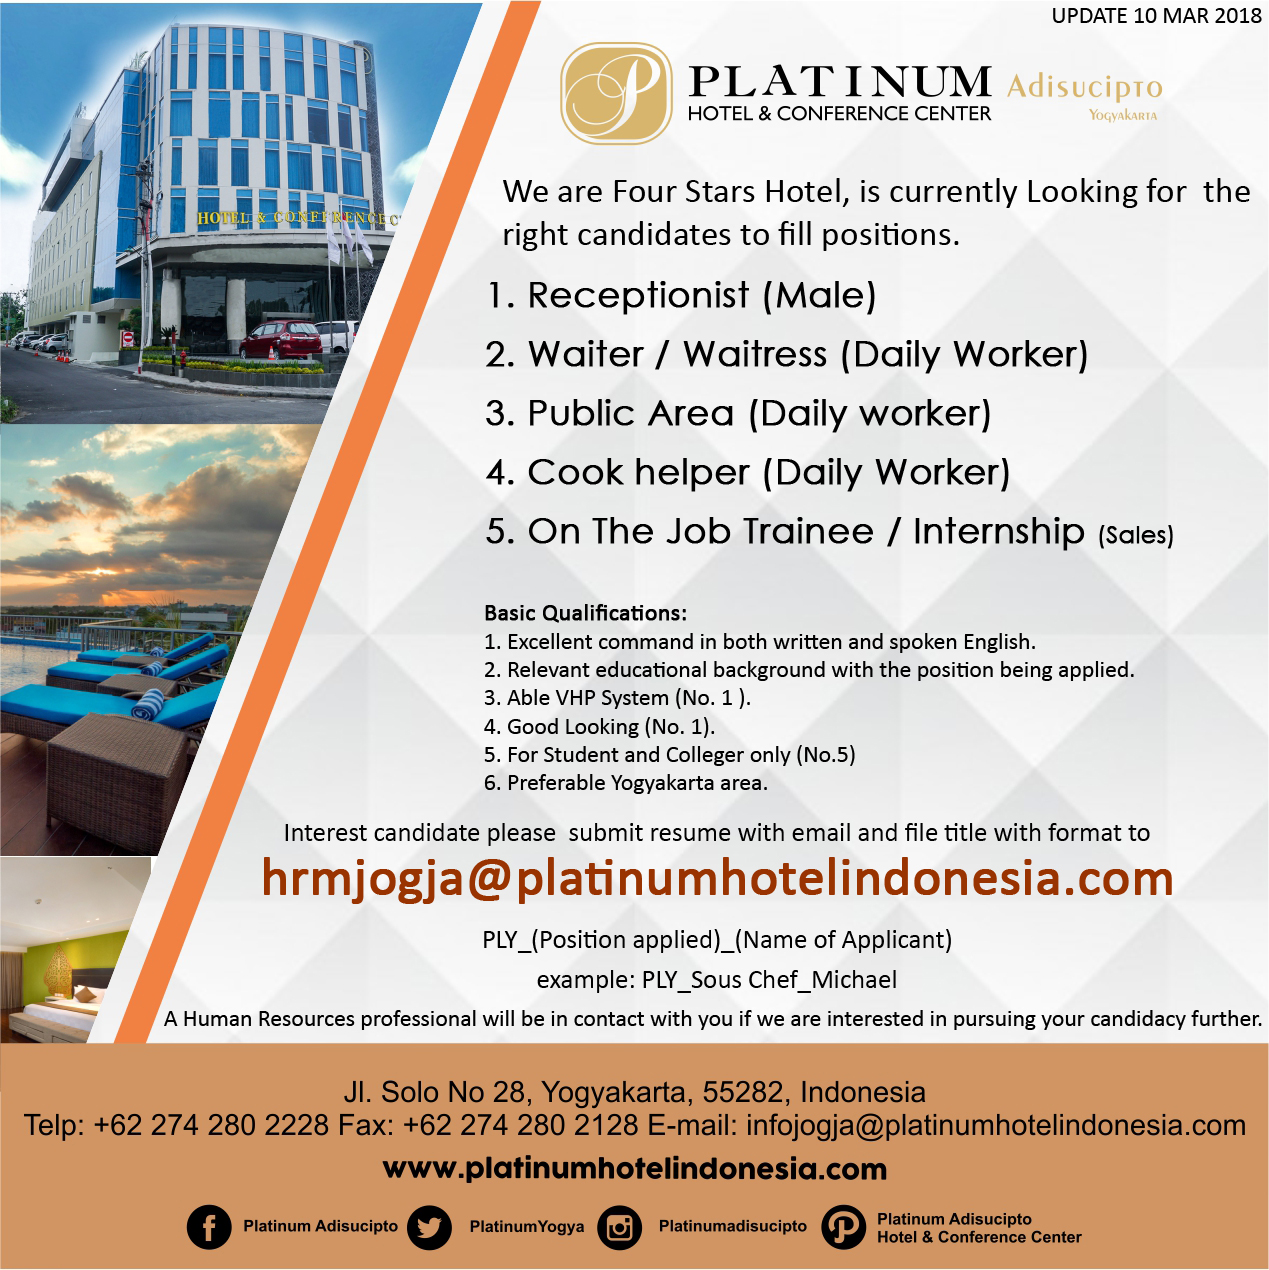 lowongan kerja Platinum Adisucipto hotel